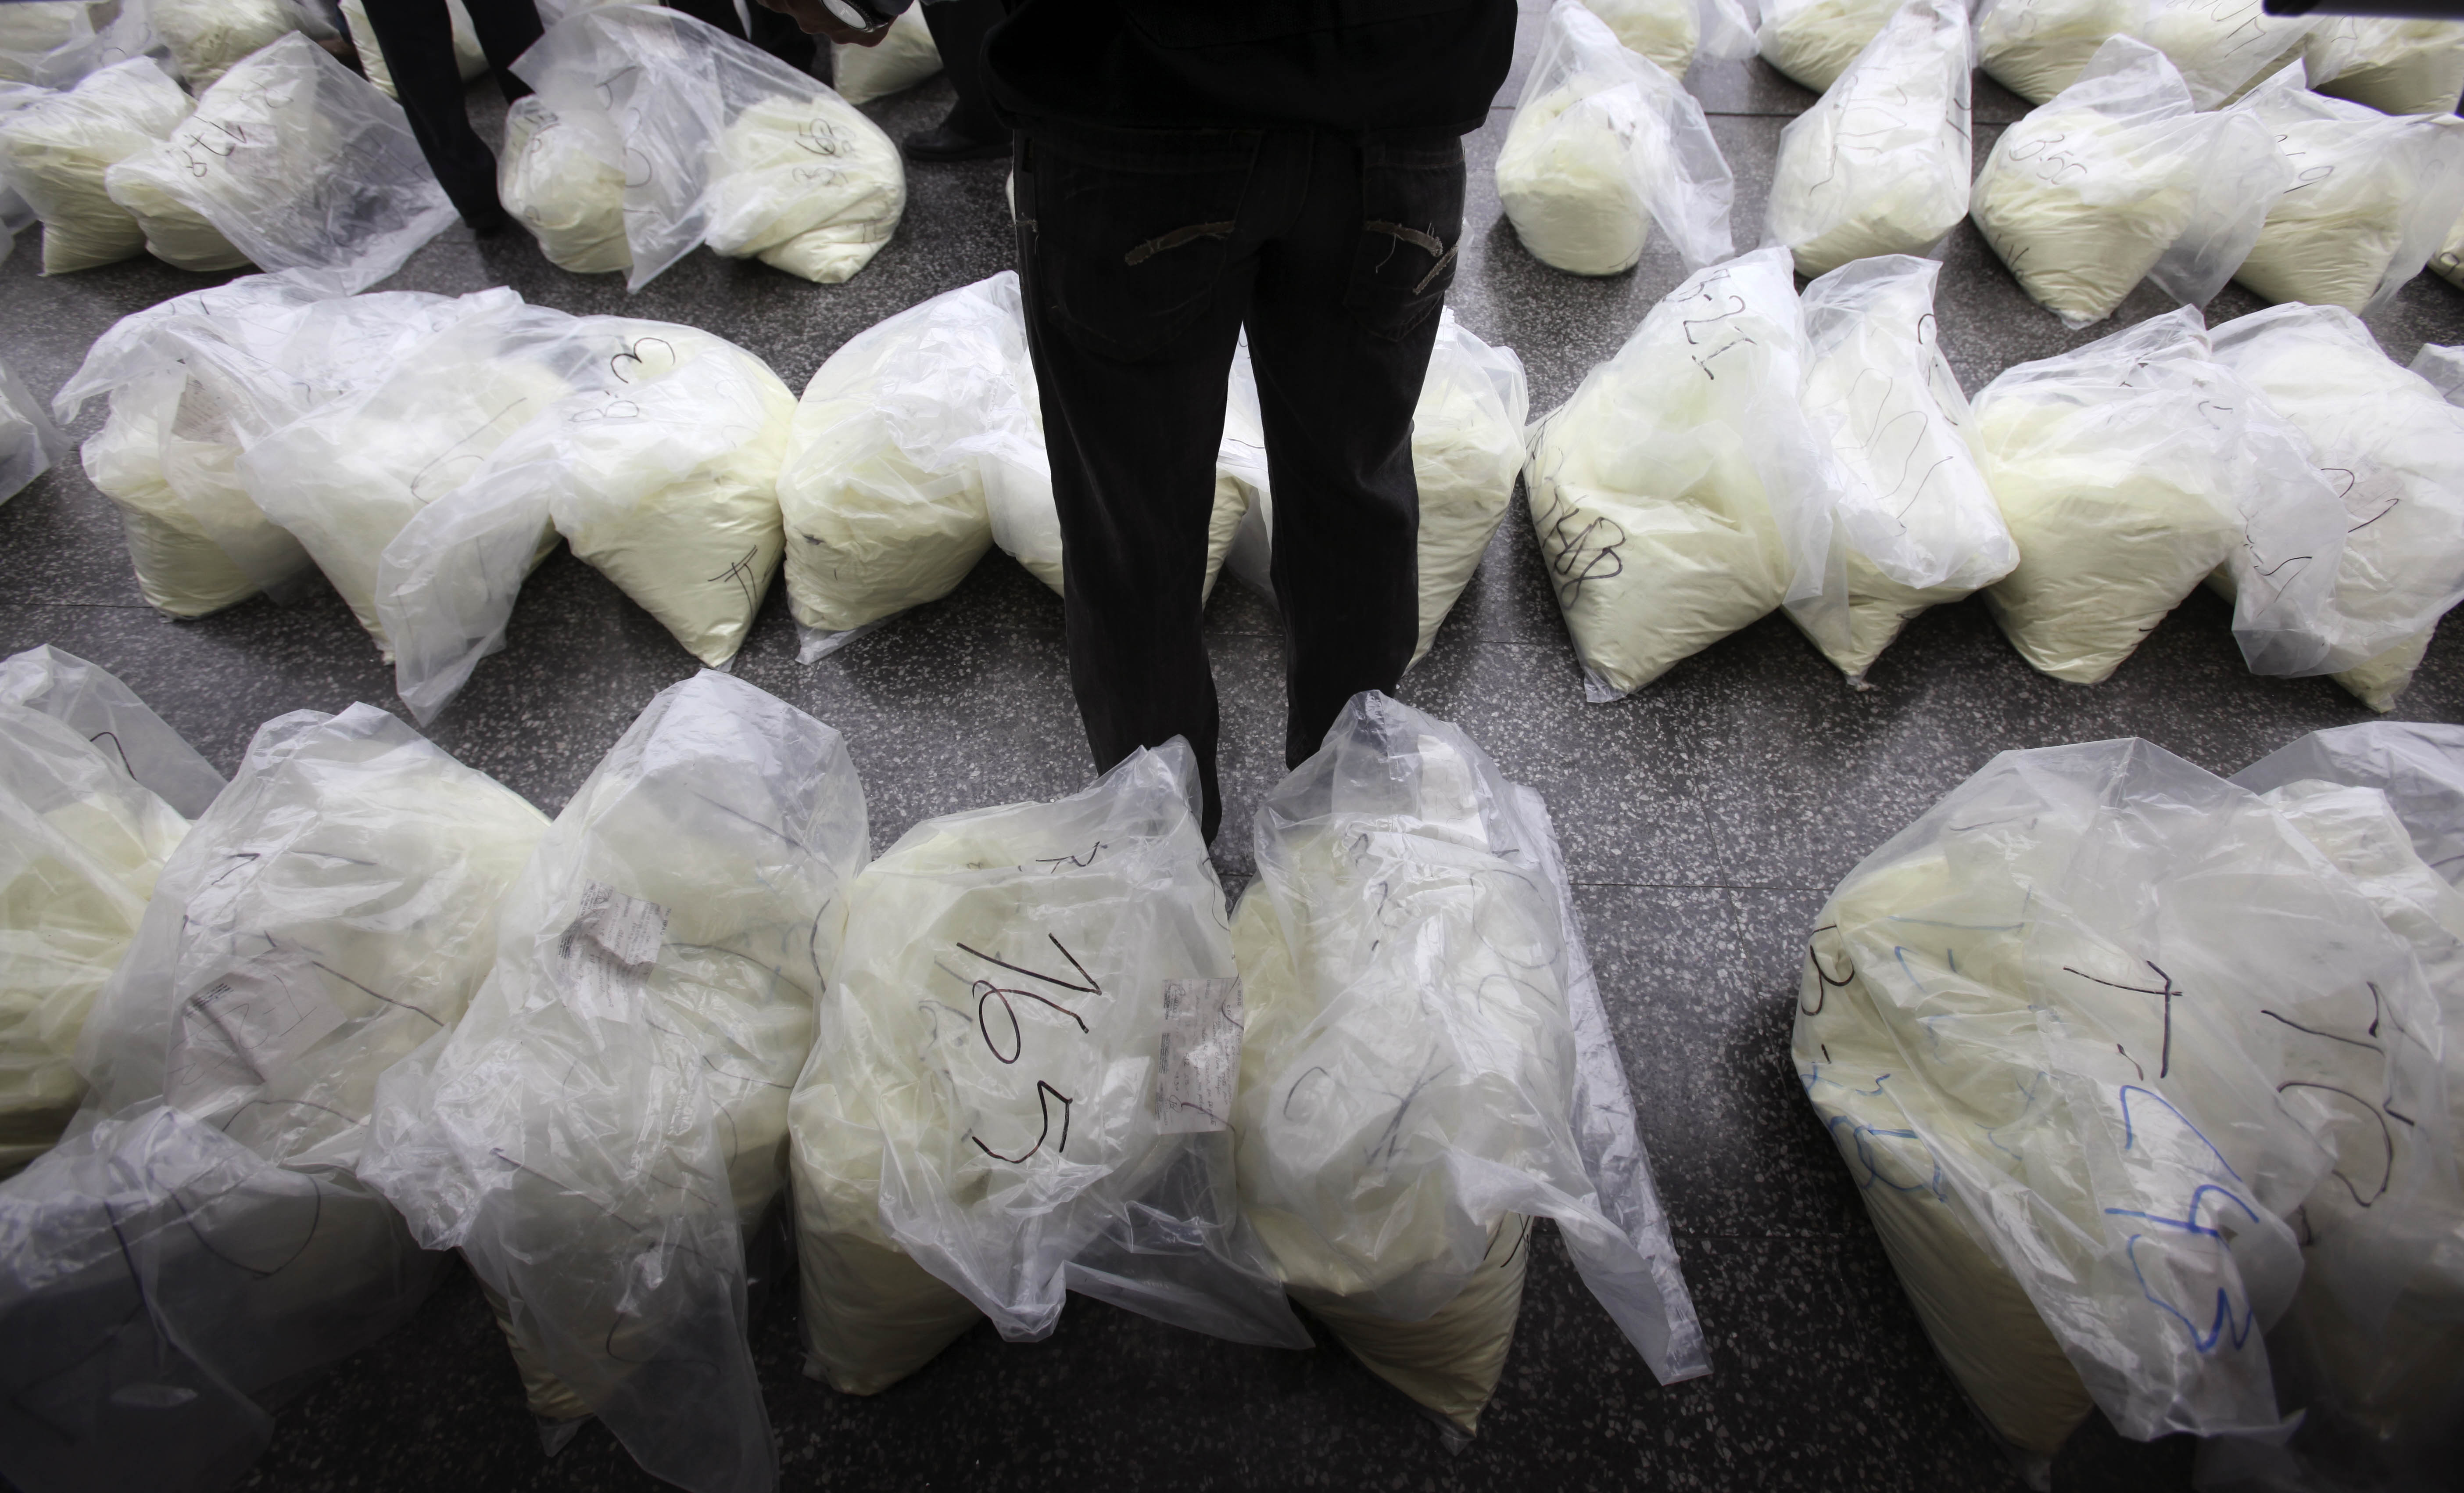 Två hamnarbetare döms för att ha hanterat en container med över 100 kilo kokain.